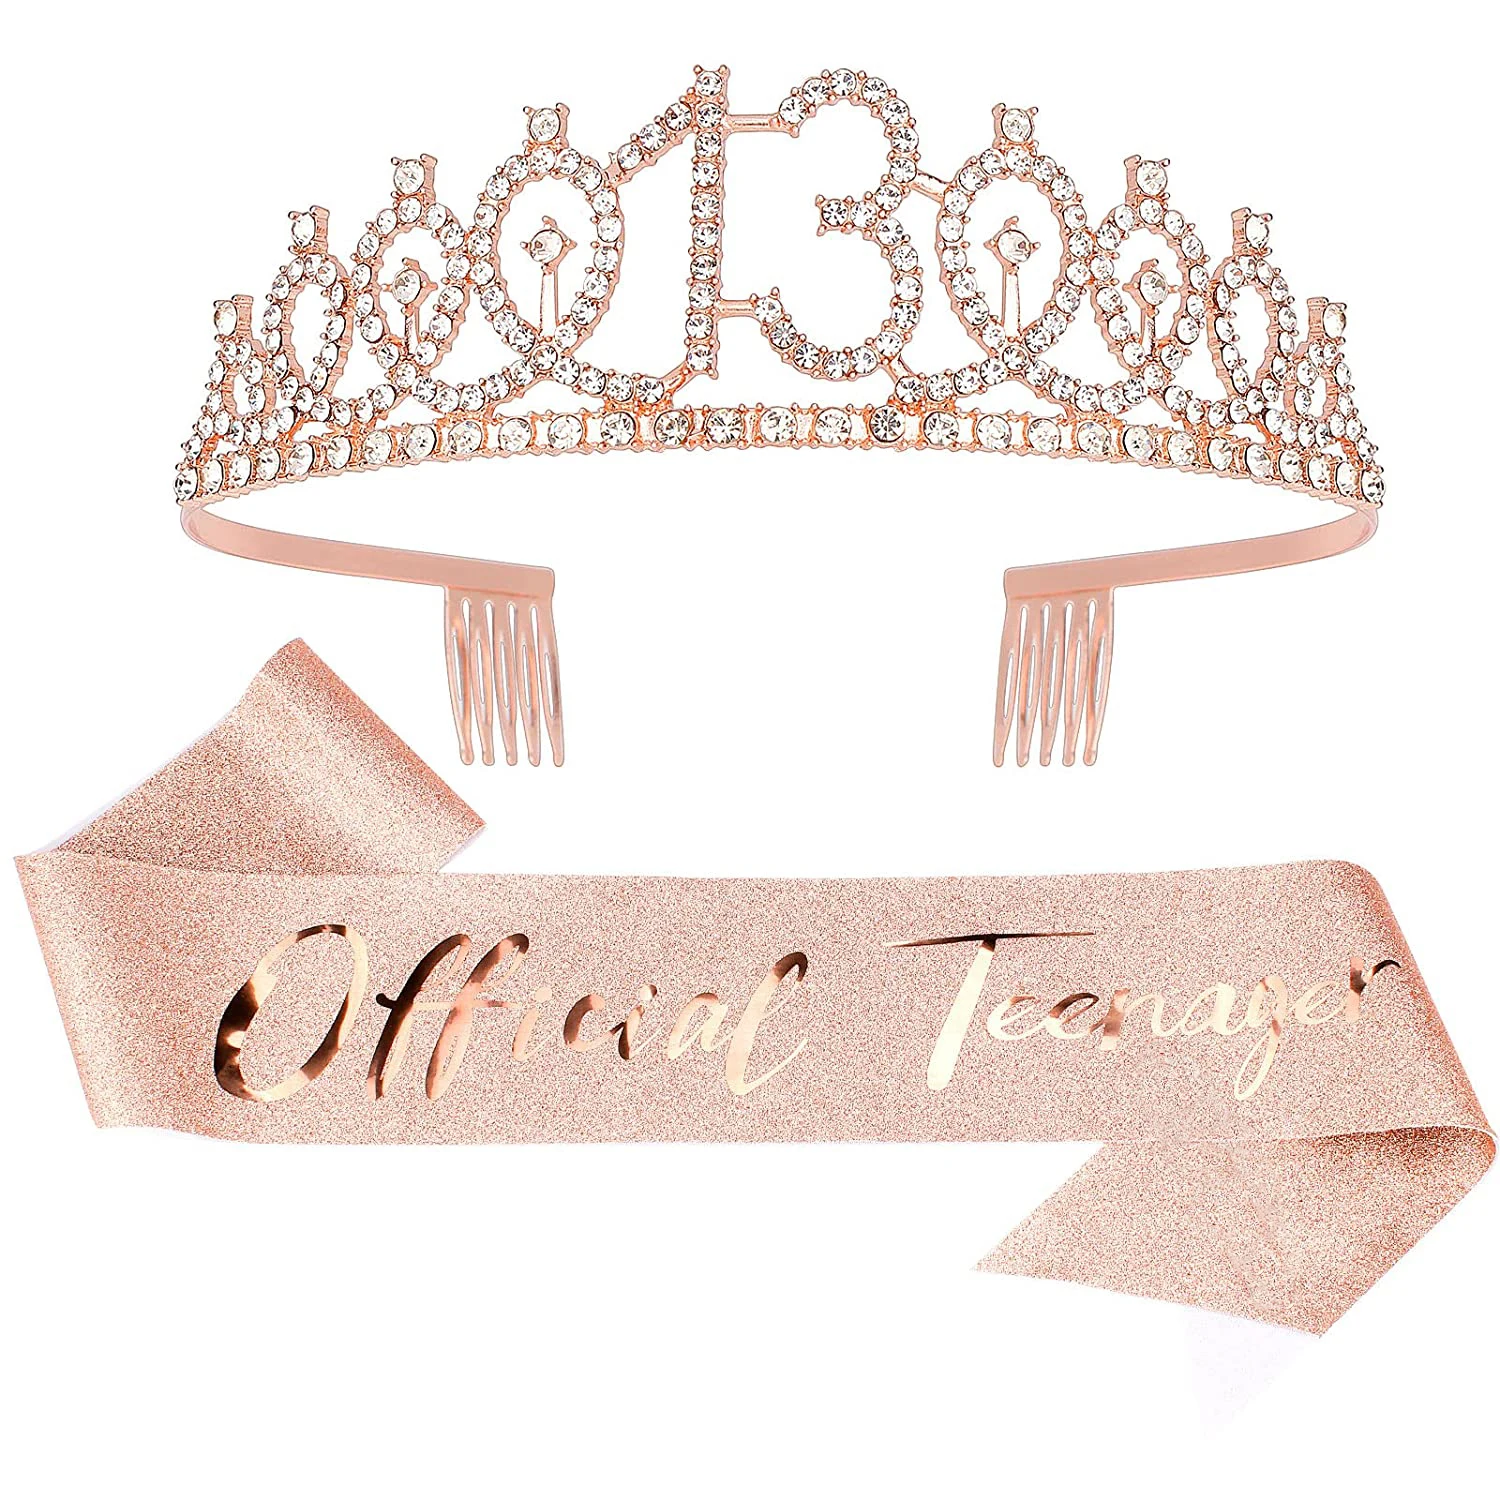 

Birthday Sash Tiara Crown Set for Women Girls Sweet 10th 13th 15th 16th 18th 21th 30th 40th Birthday Party Decoration Favor Gift